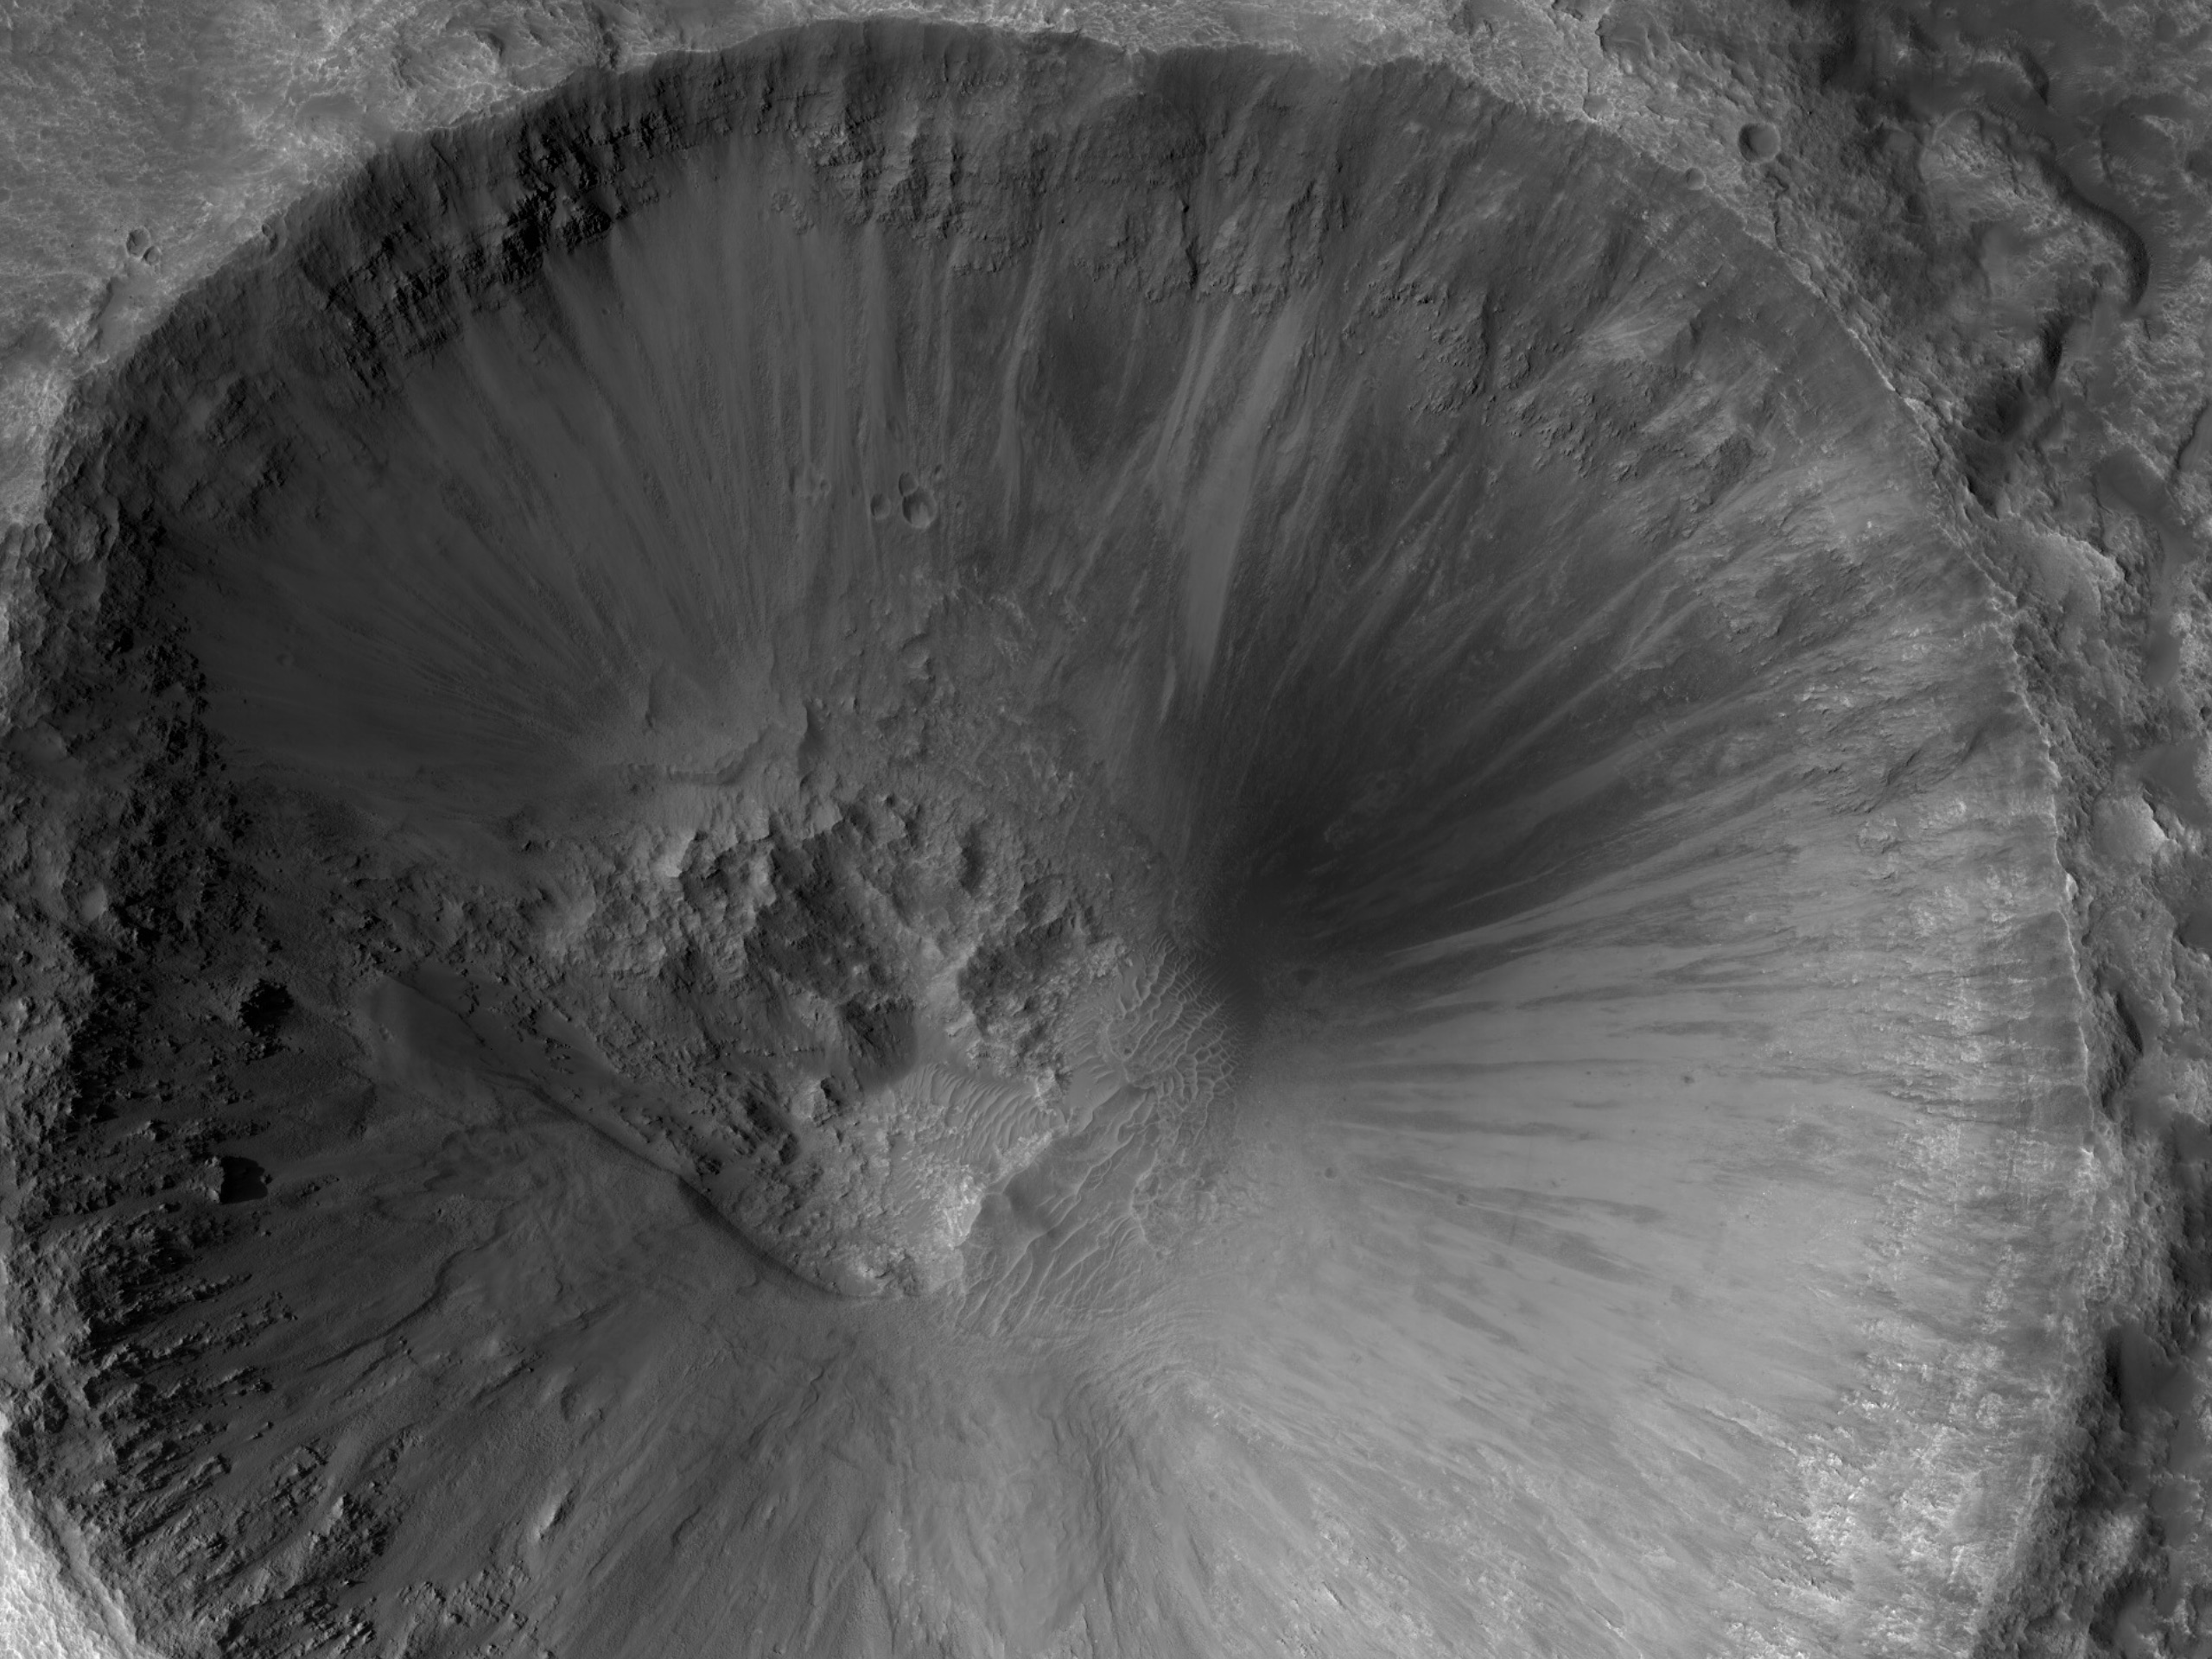 Dunkles Material auf einem Kraterabhang